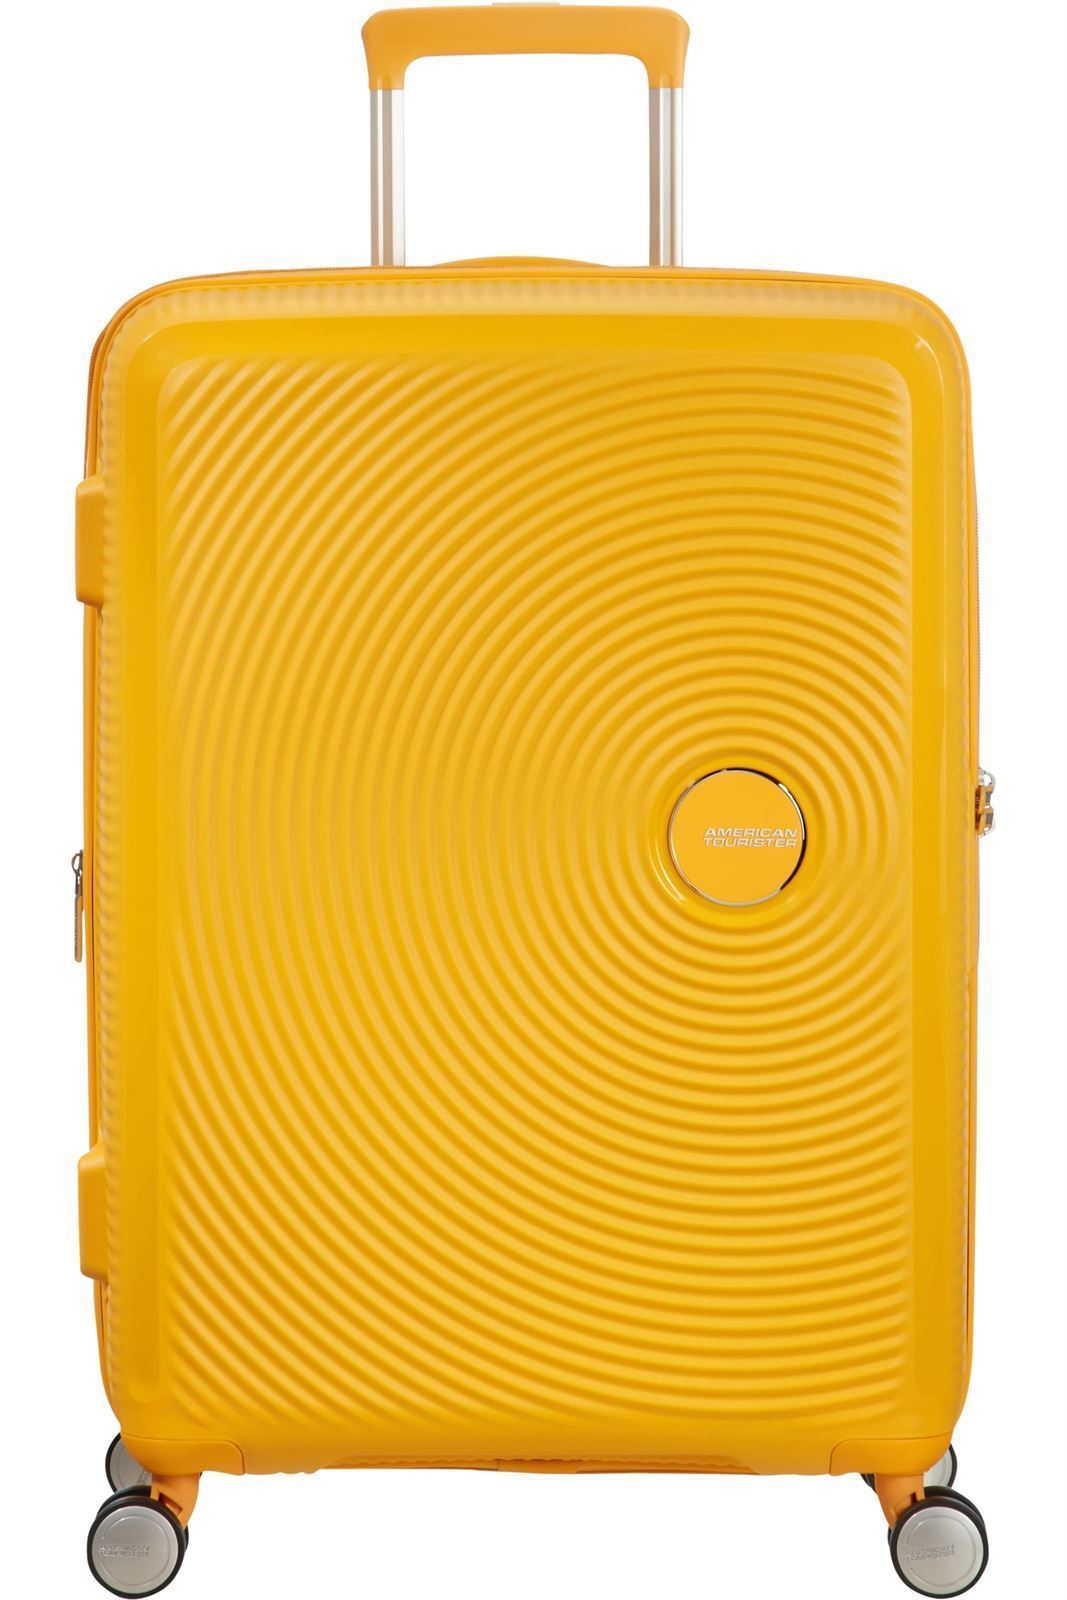 American Tourister Soundbox rigida mediana expandible amarilla 3 años de garantía - Imagen 1